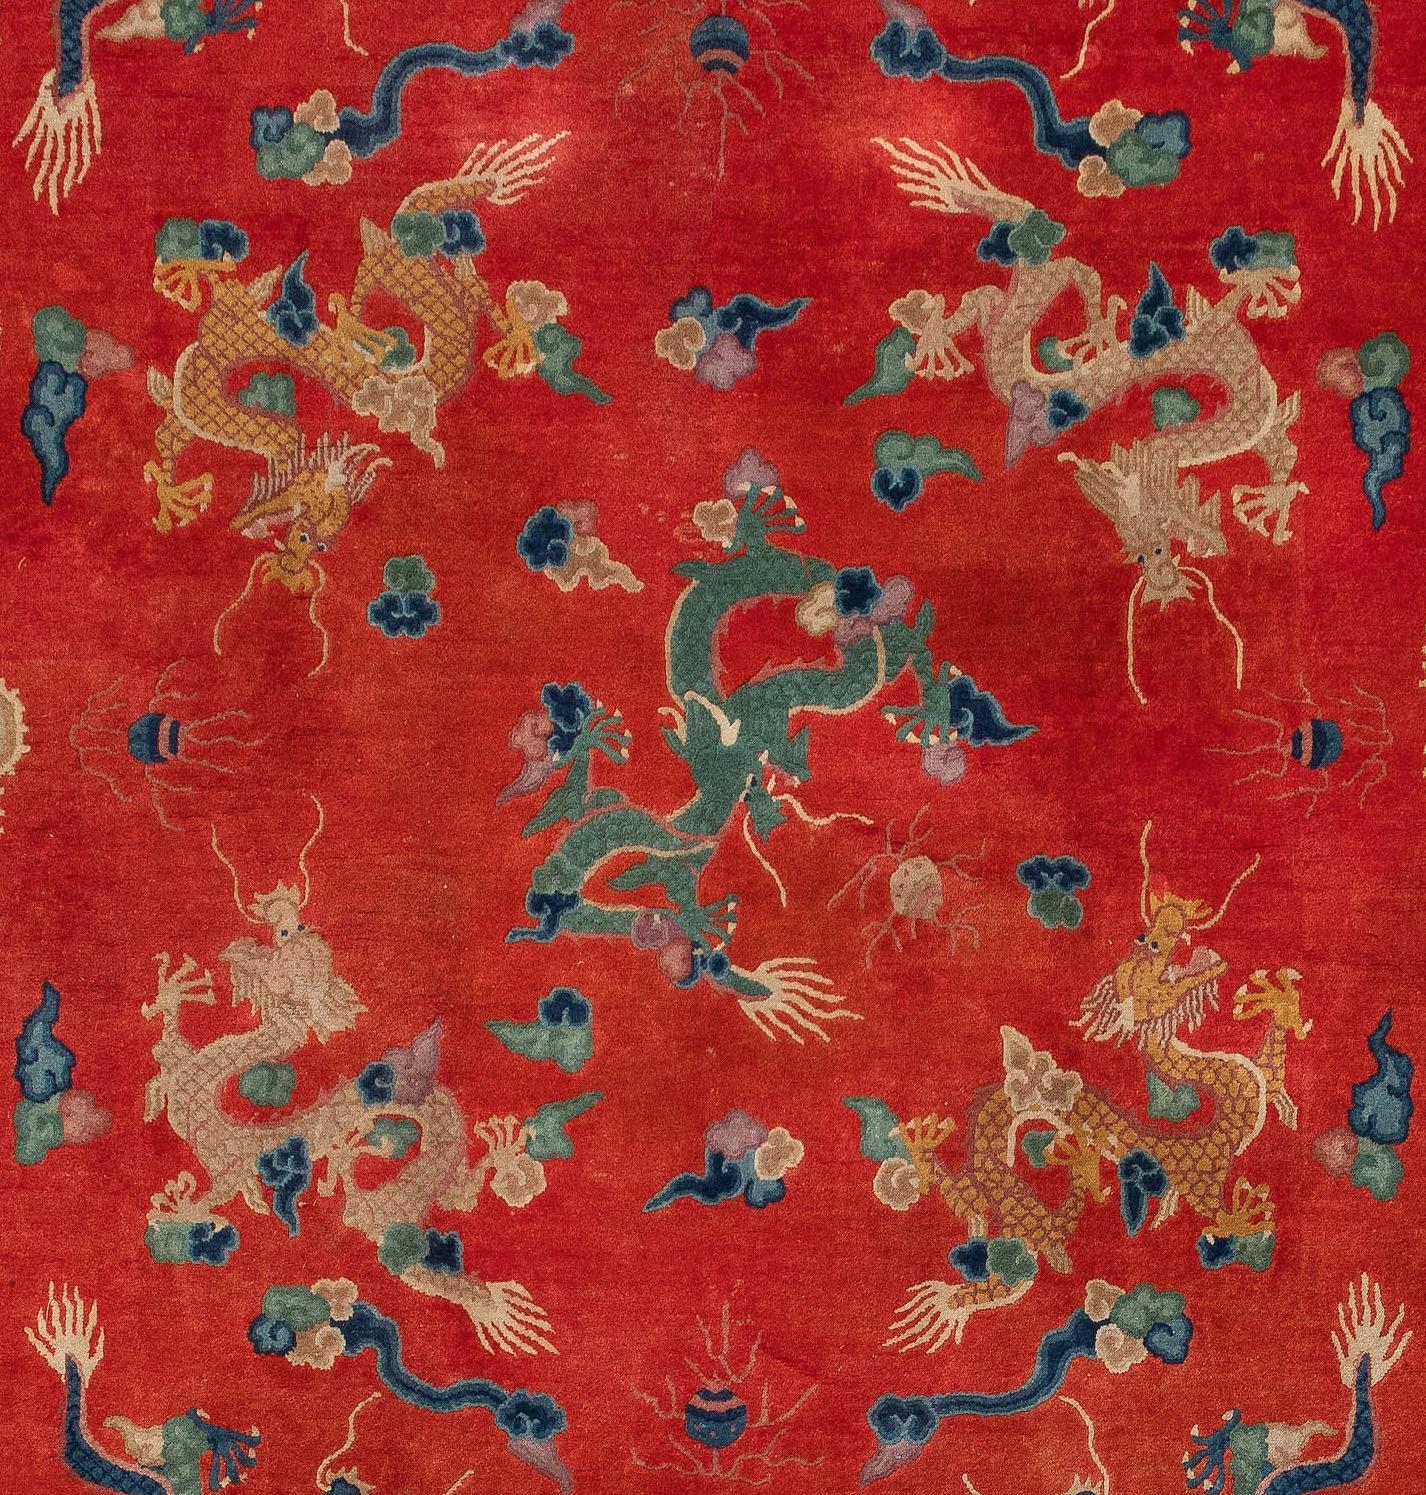 Ein 9-Drachen-Chinesen-Teppich mit rotem Feld. Maße: 8 x 10 ft.

Dieses traditionelle Drachenmuster findet sich typischerweise auf antiken Teppichen aus Beijing/Peking und Ningxia. Auf diesem Teppich sind im inneren Feld 9 Drachen abgebildet. 9 ist